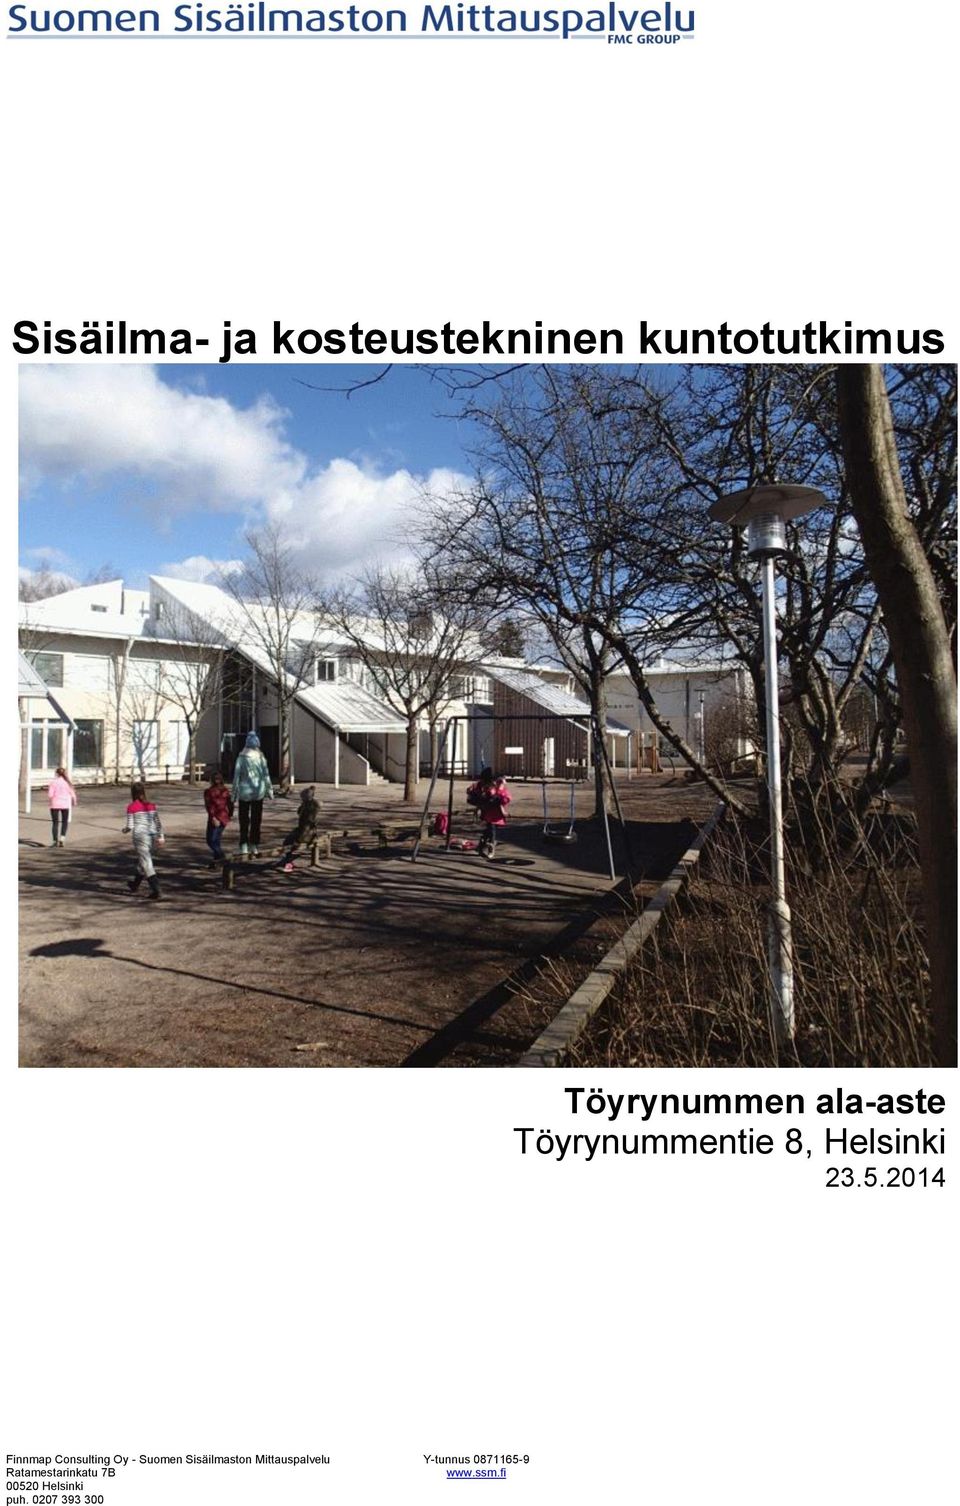 2014 Finnmap Consulting Oy - Suomen Sisäilmaston